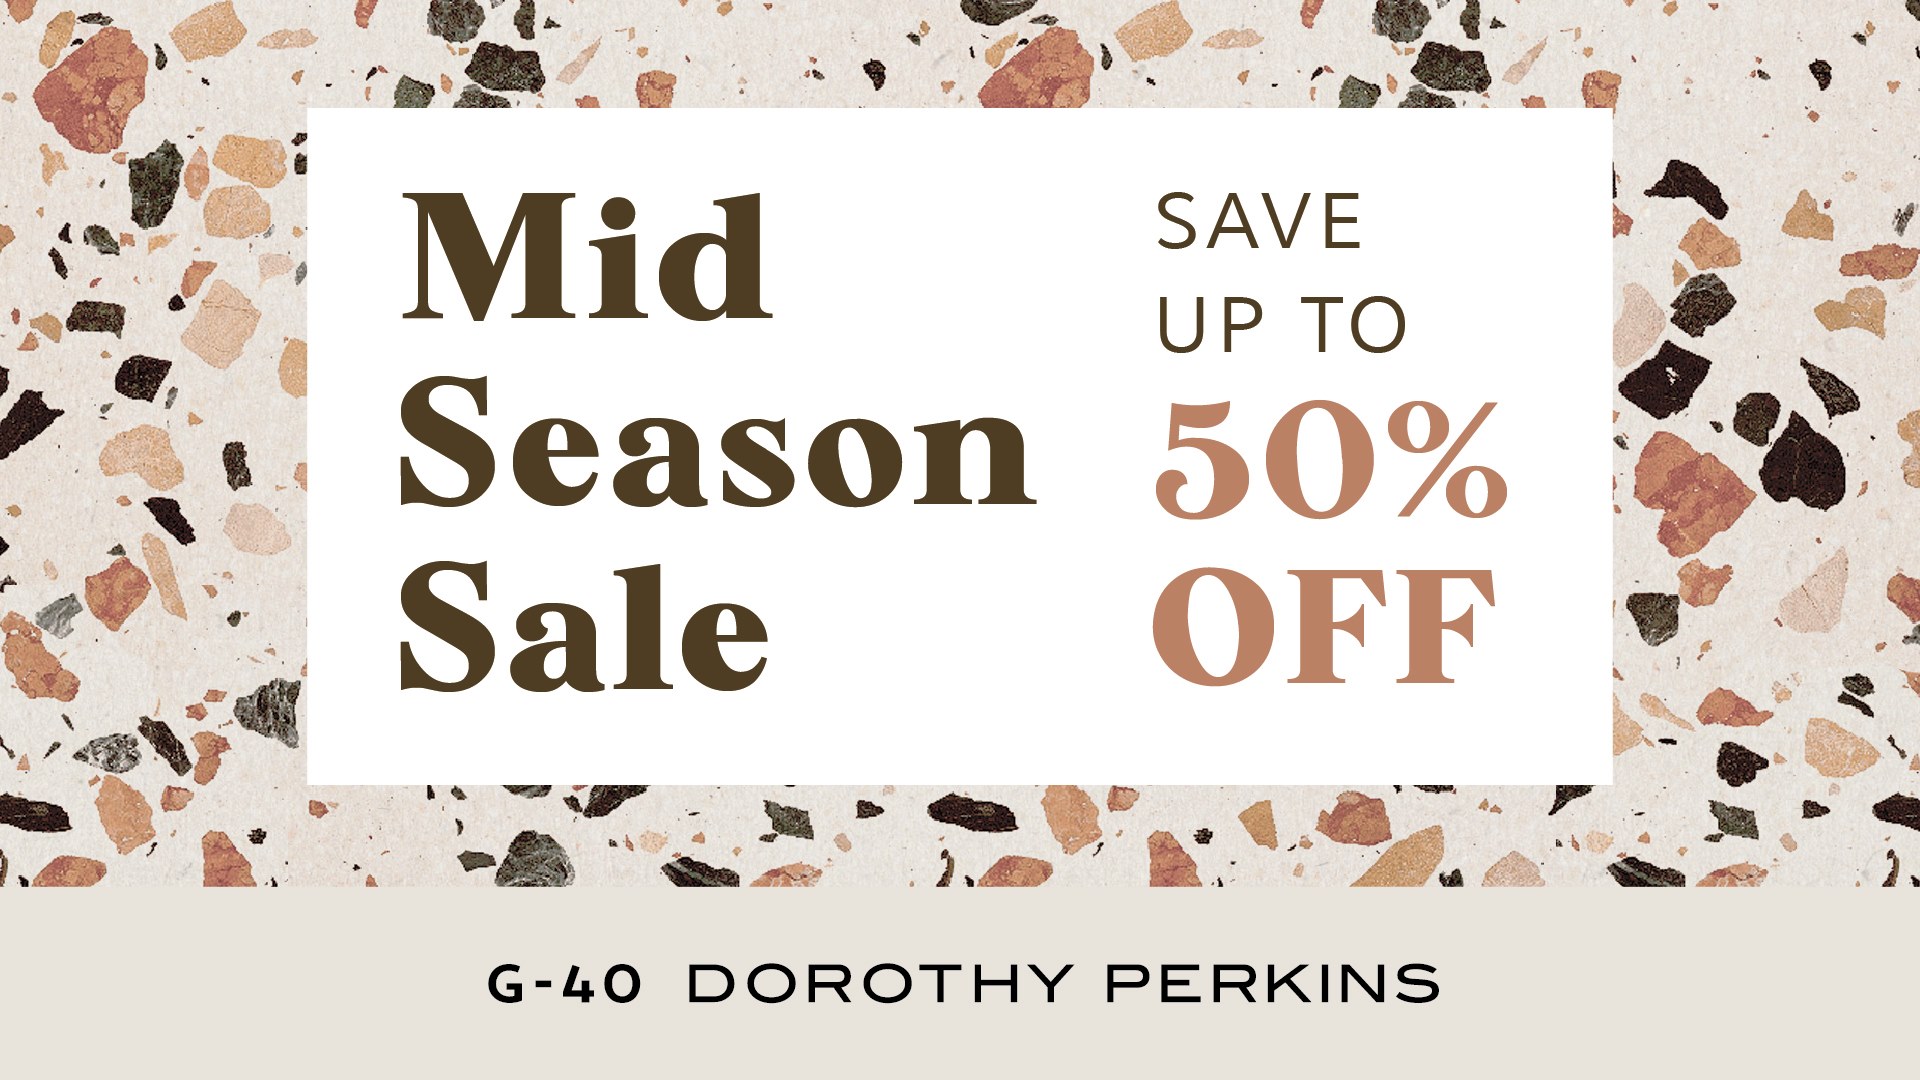 DOROTHY PERKINS | Mid Season Sale - LG ...